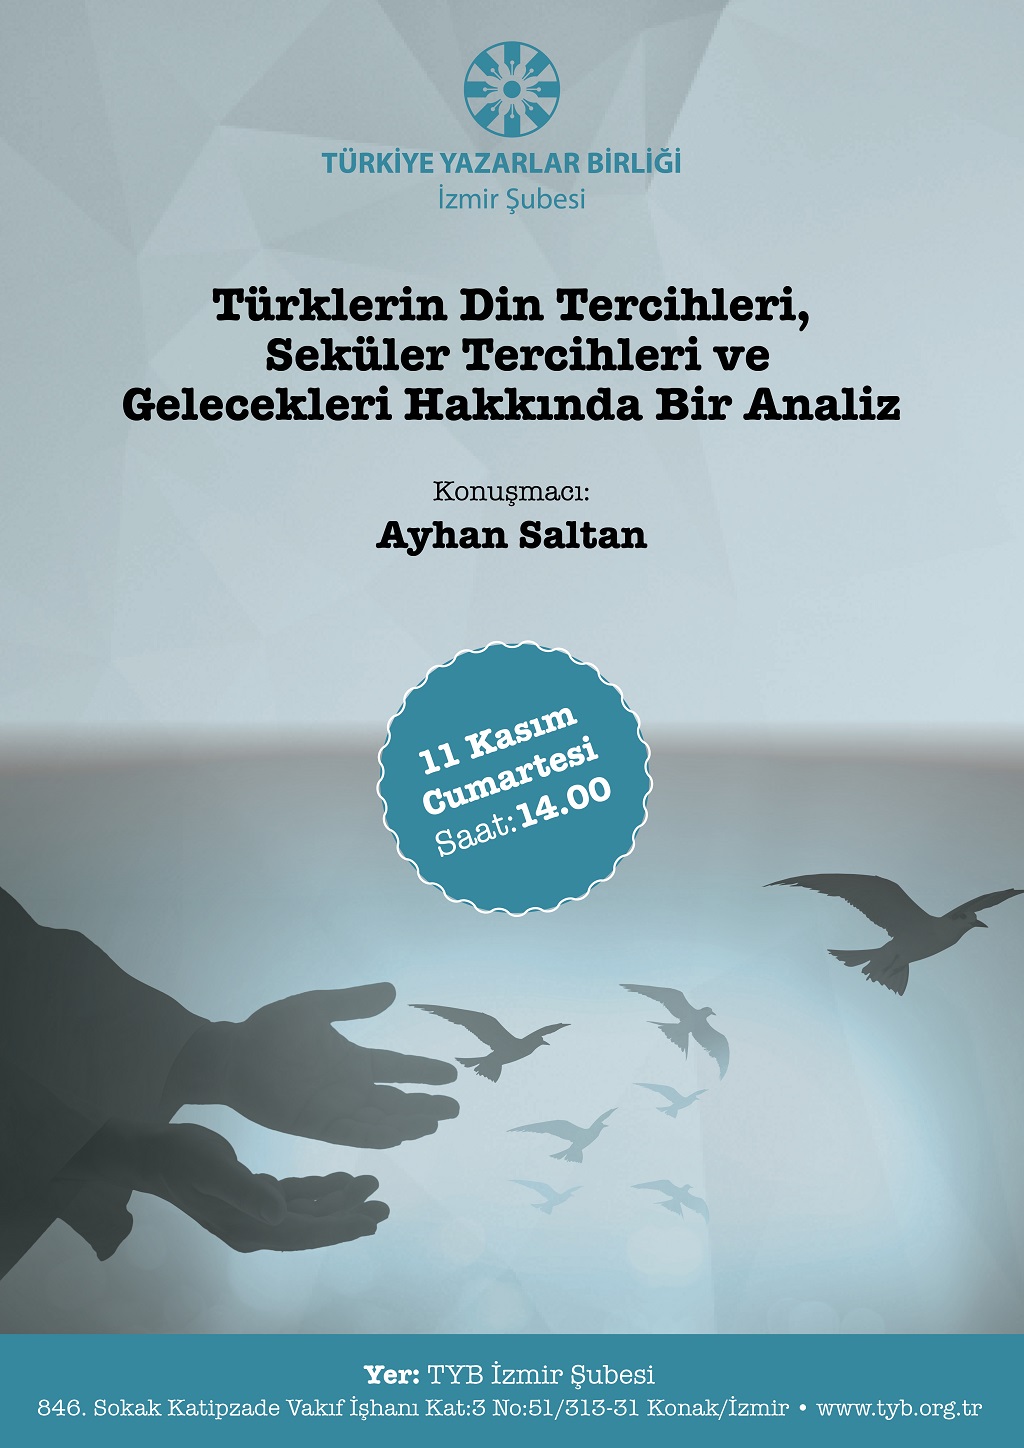 İzmir Şubesinde Türklerin Din Tercihleri Söyleşisi